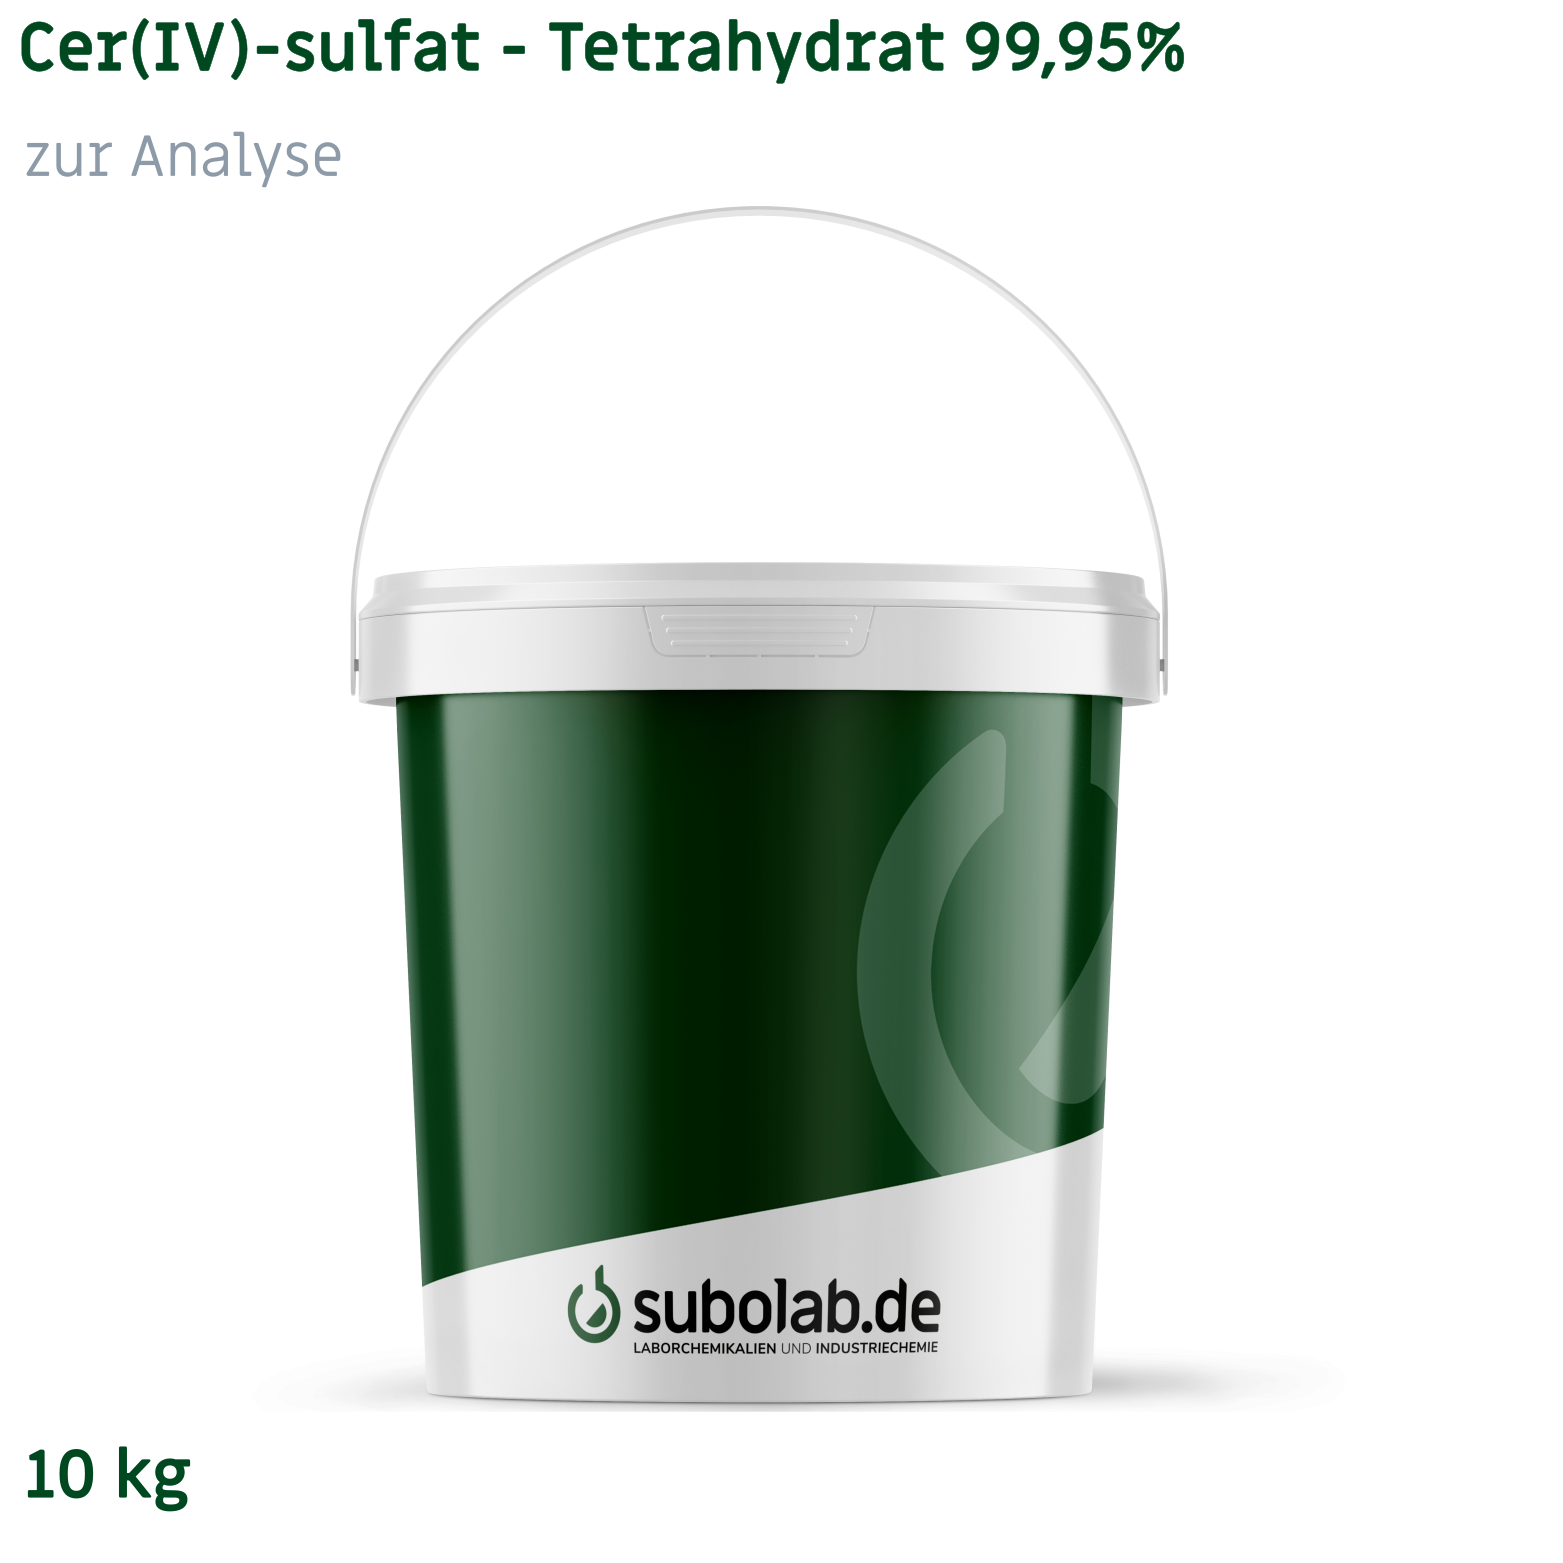 Bild von Cer(IV)-sulfat - Tetrahydrat 99,95% zur Analyse (10 kg)